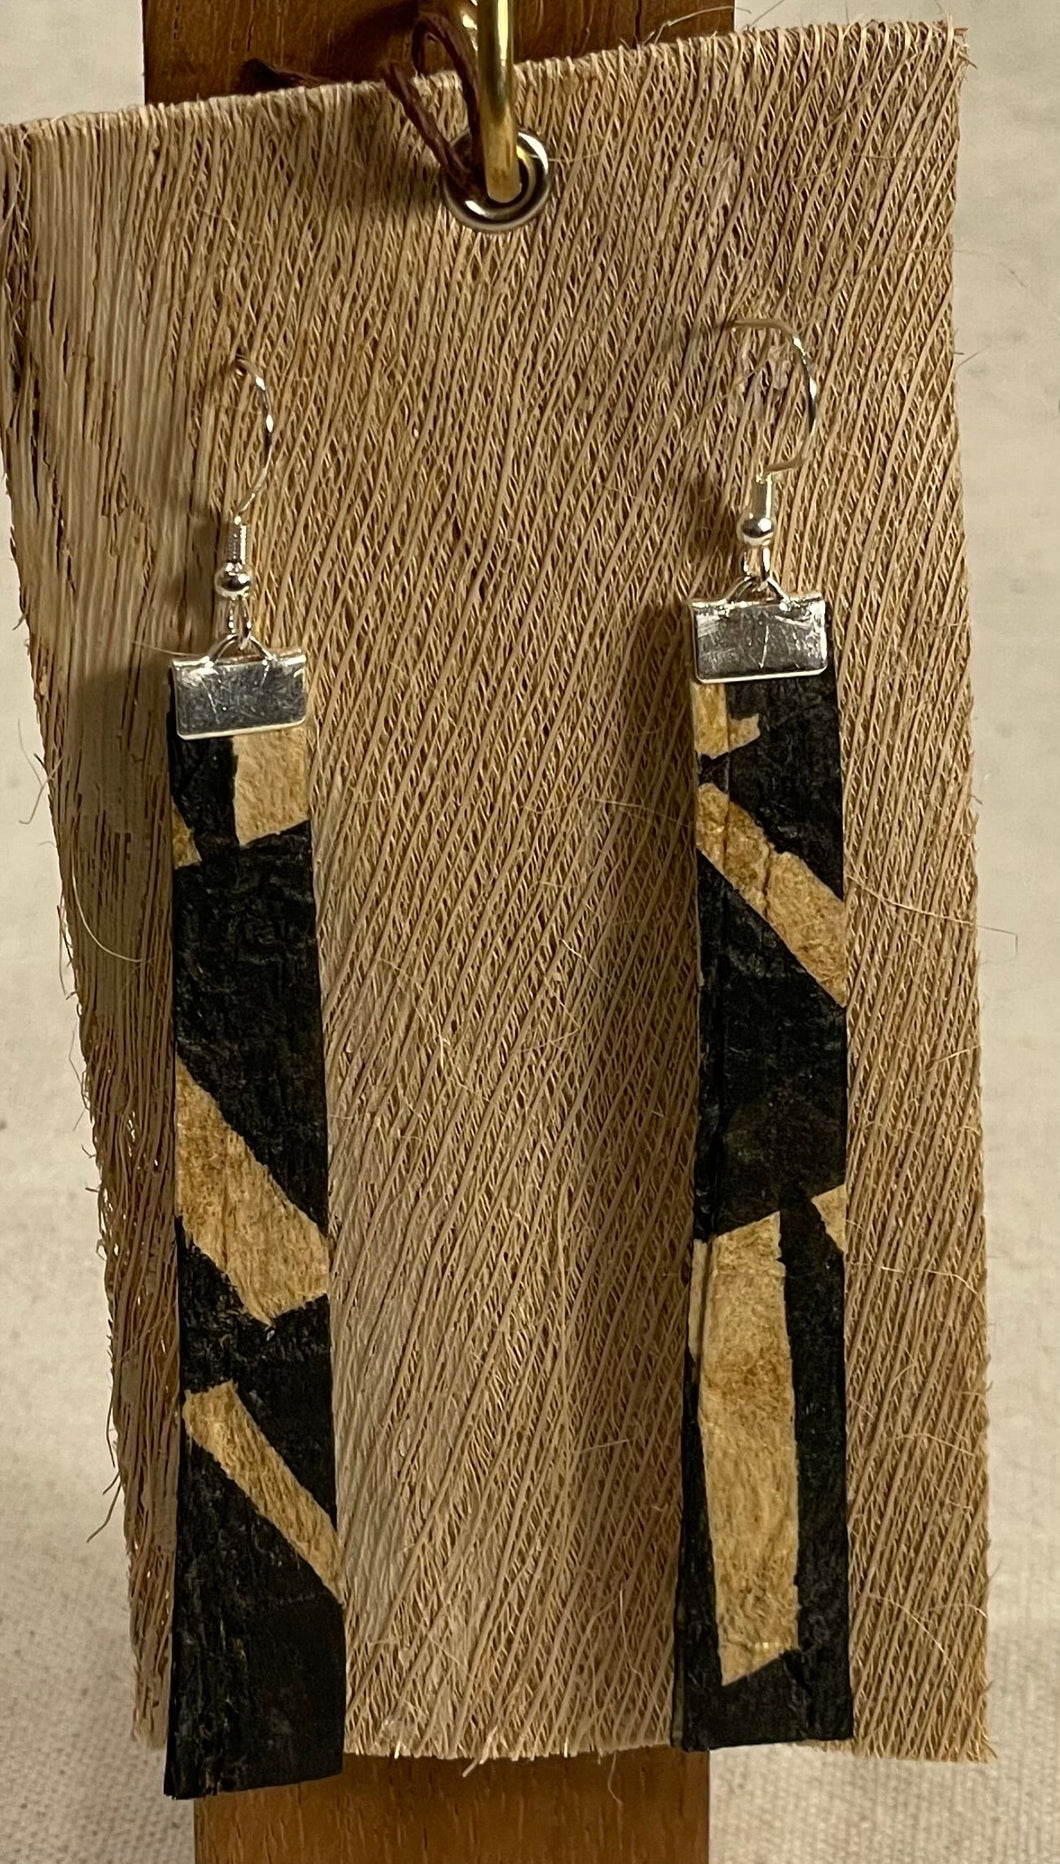 ʻOhe Earrings - Long-3 1/2 x 1/2